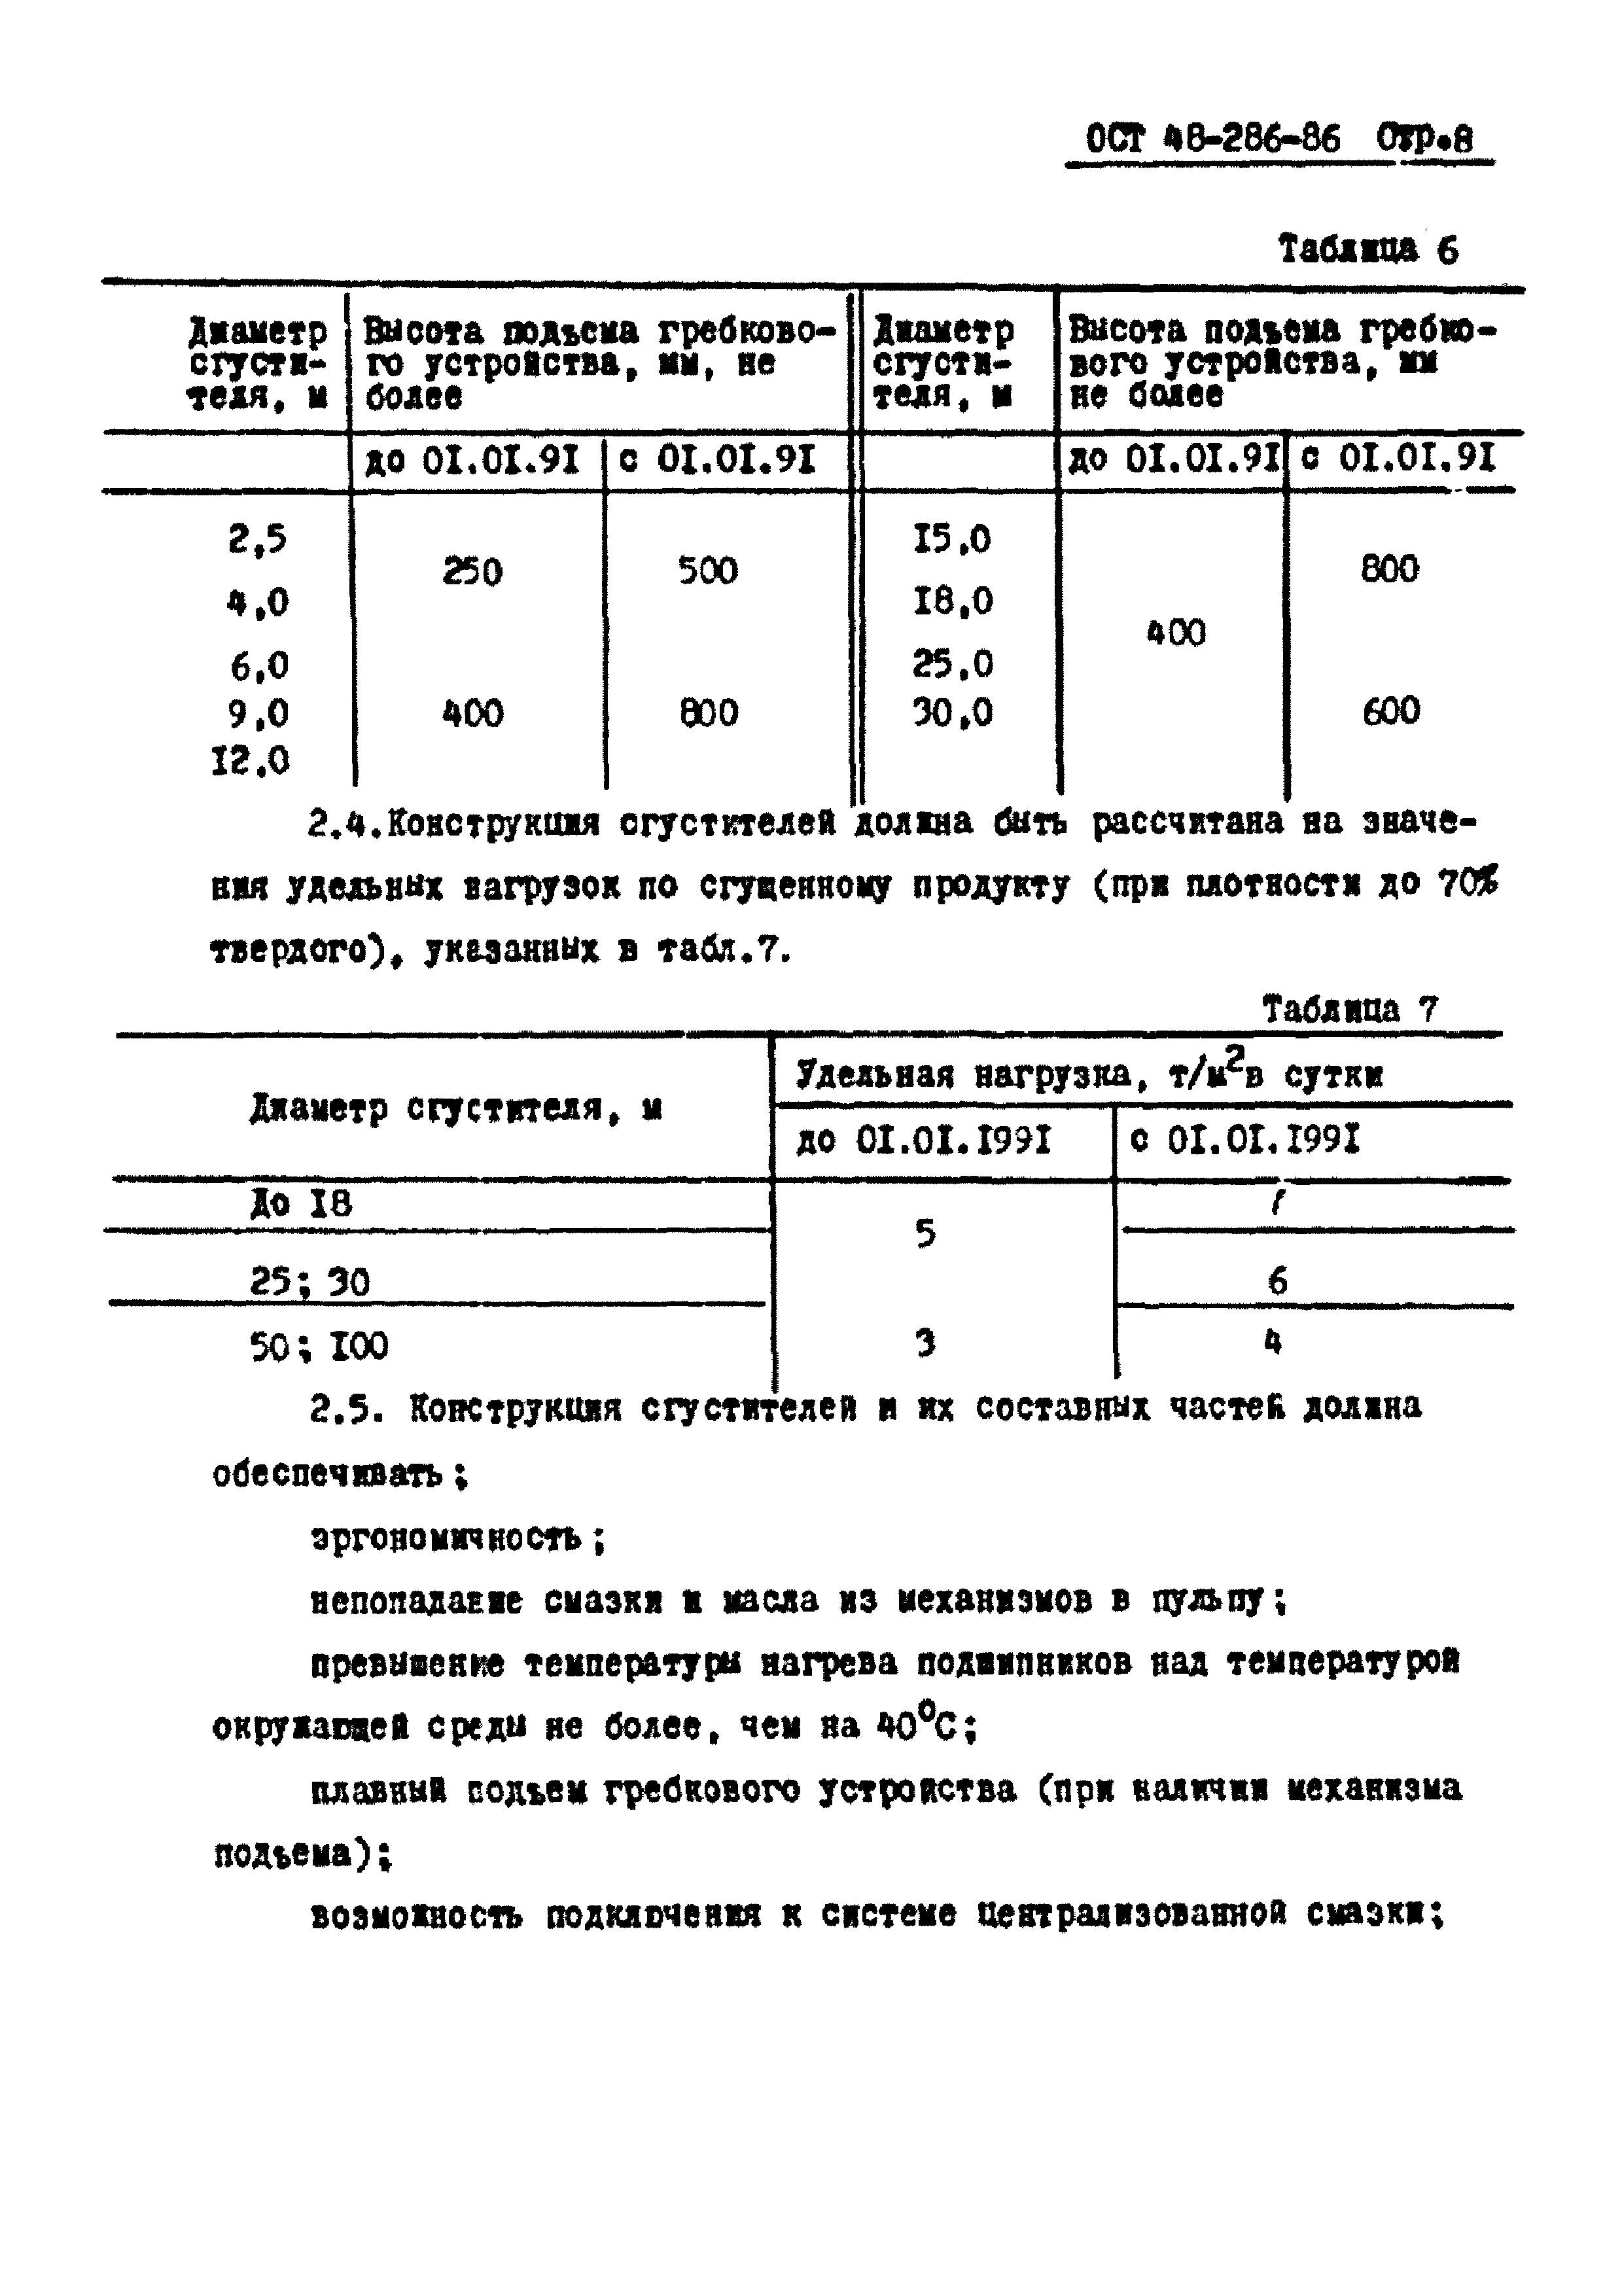 ОСТ 48-286-86